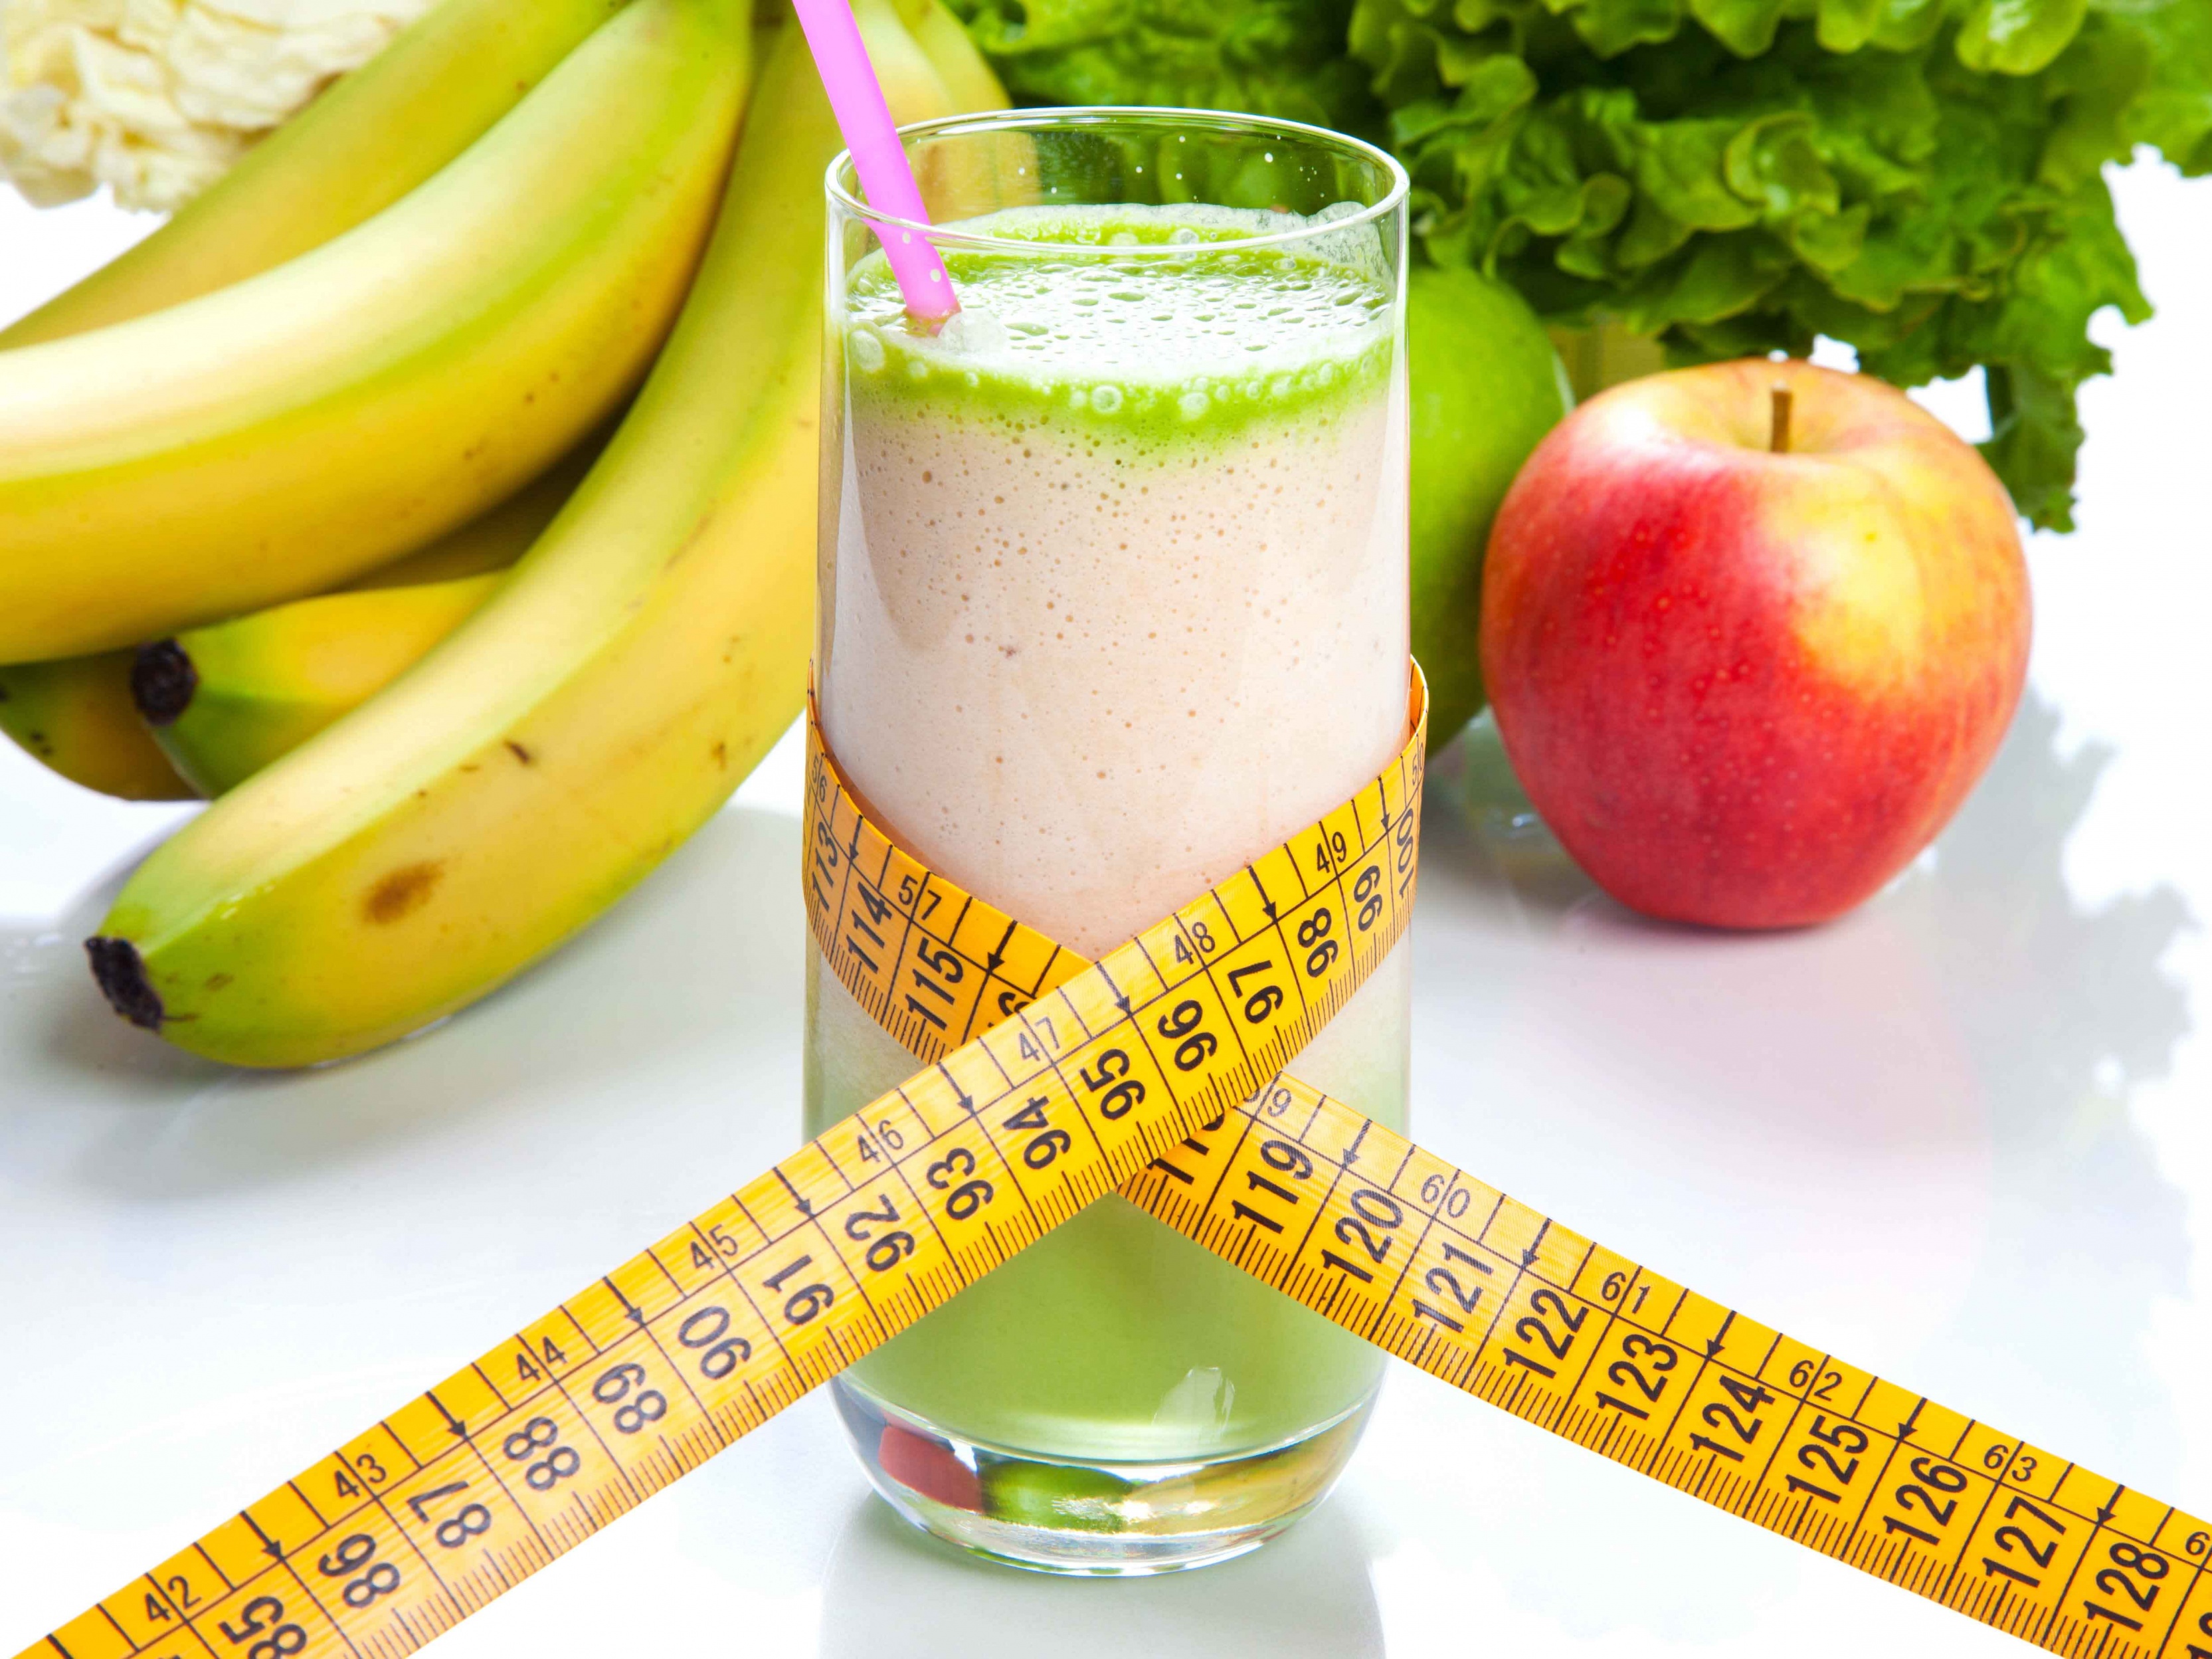 Как похудеть с помощью диеты на овсянке, твороге и яблоках